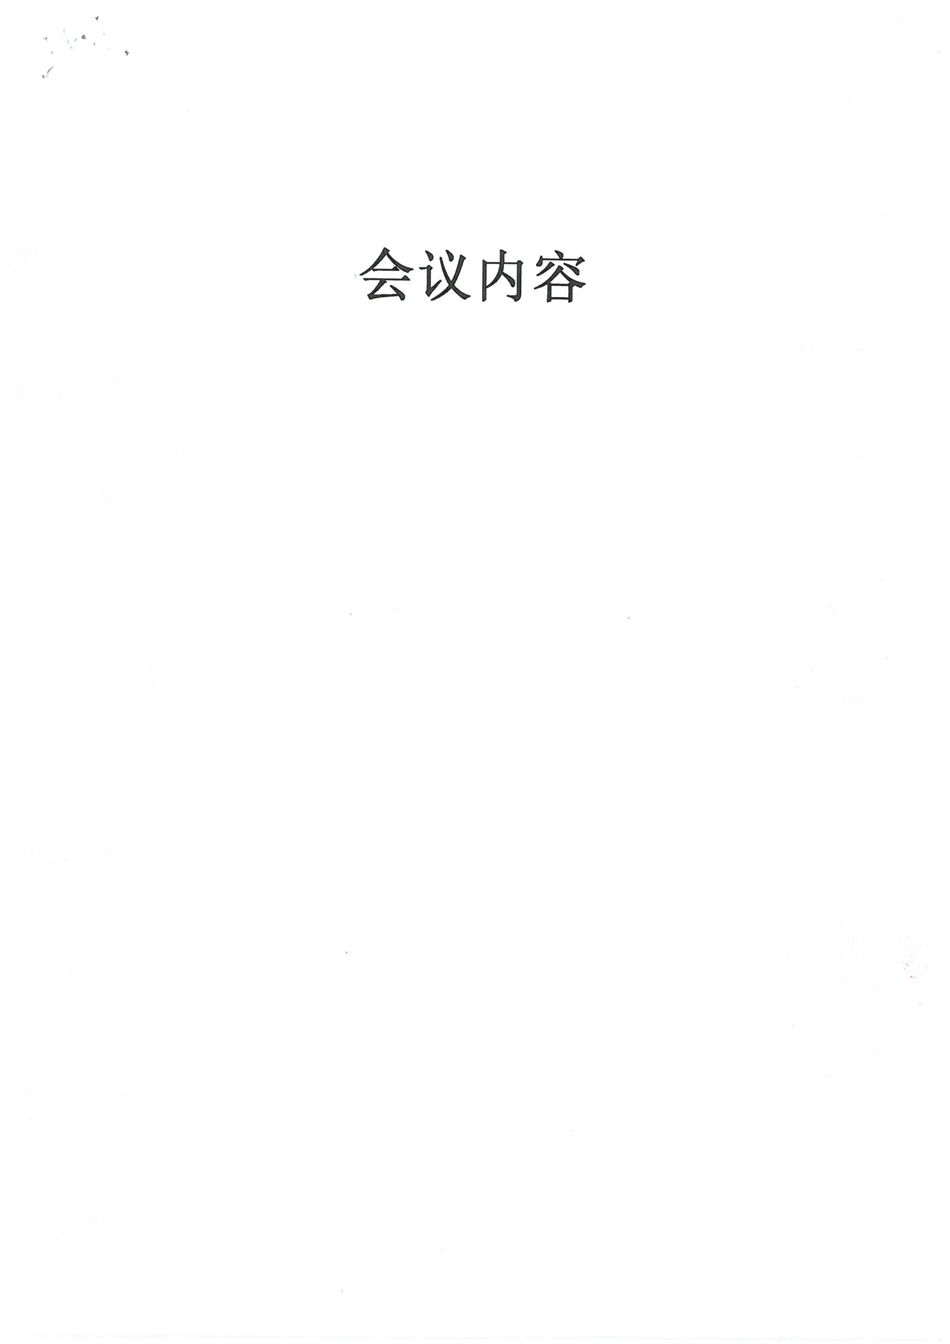 萍乡市第三人民医院验收单_页面_5.jpg